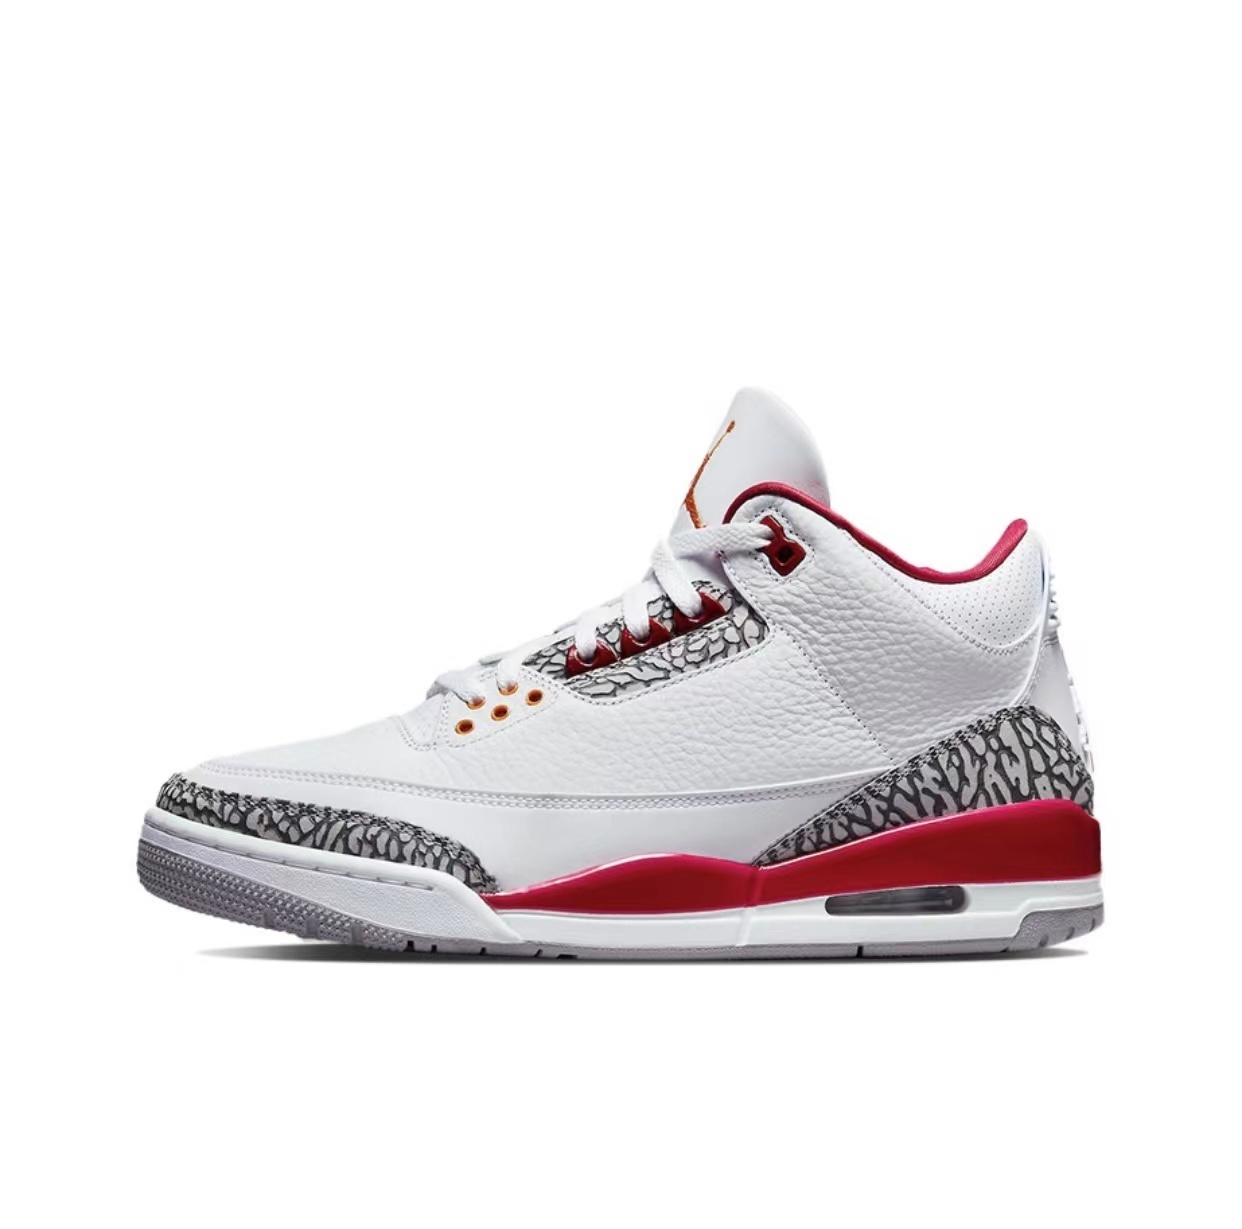 Air Jordan 3 Retro Cardinal Red CT8532-126 - Sneakercome.com